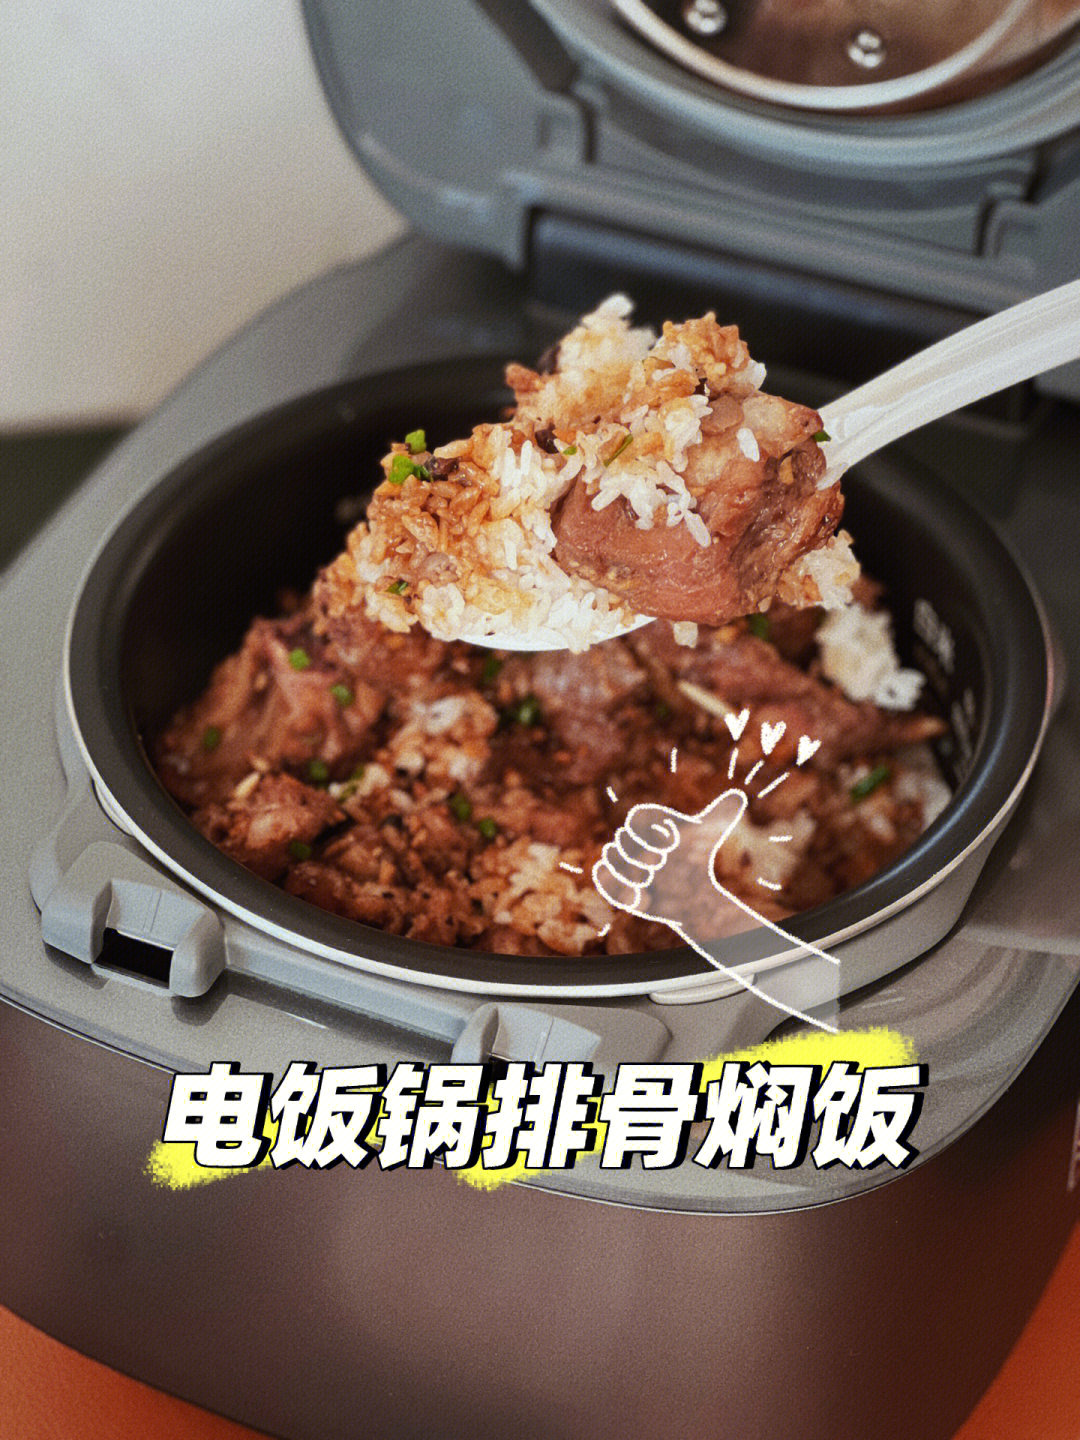 简易版电饭锅排骨焖饭鲜香滑嫩超好吃